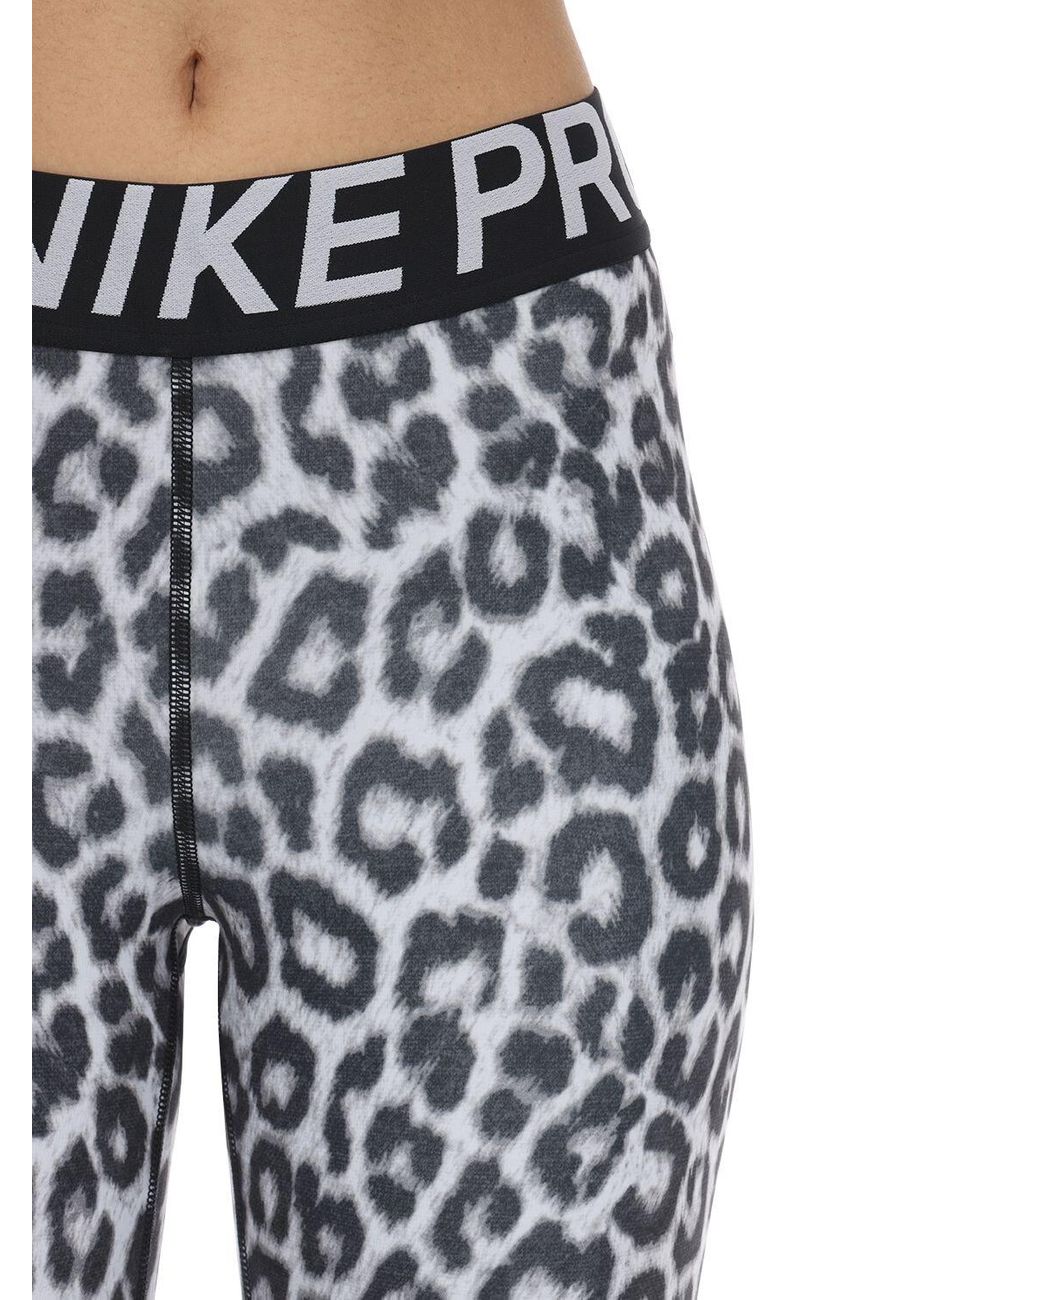 Nike Leopard Shorts in Black | Lyst